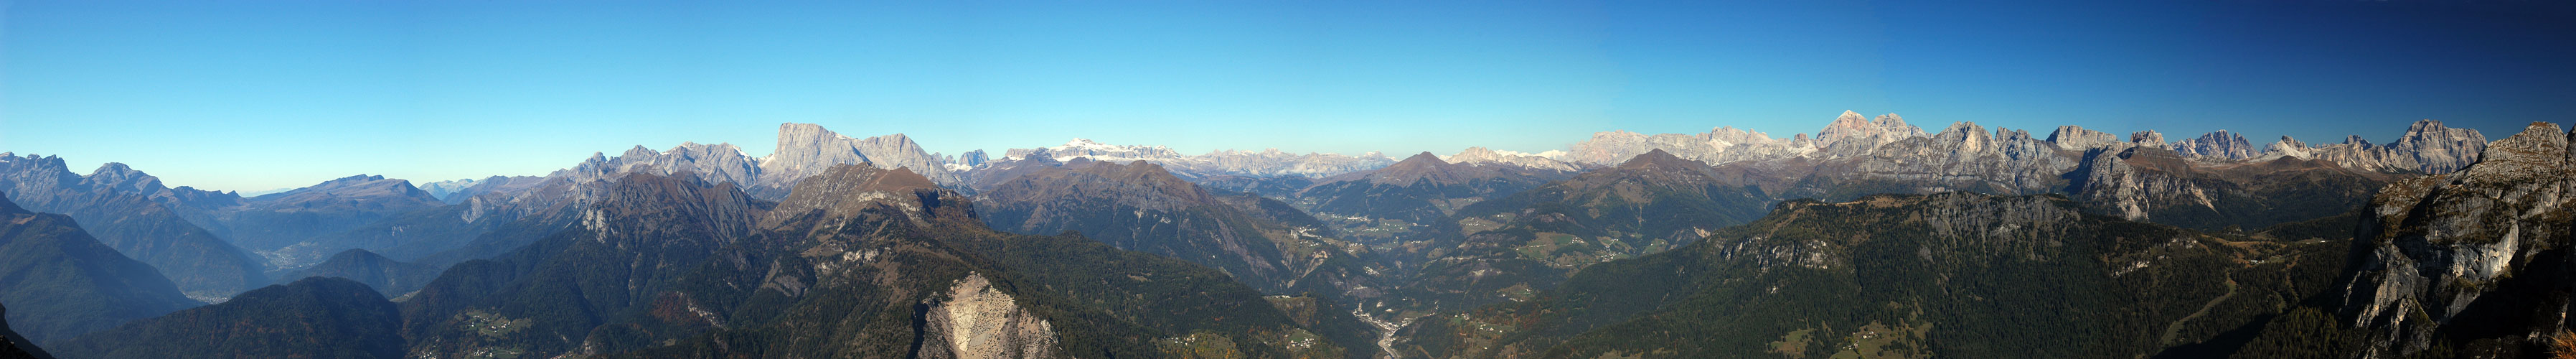 dal Col Rean, gruppo del Civetta, verso Alleghe, Marmolada, Sella - Dolomiti